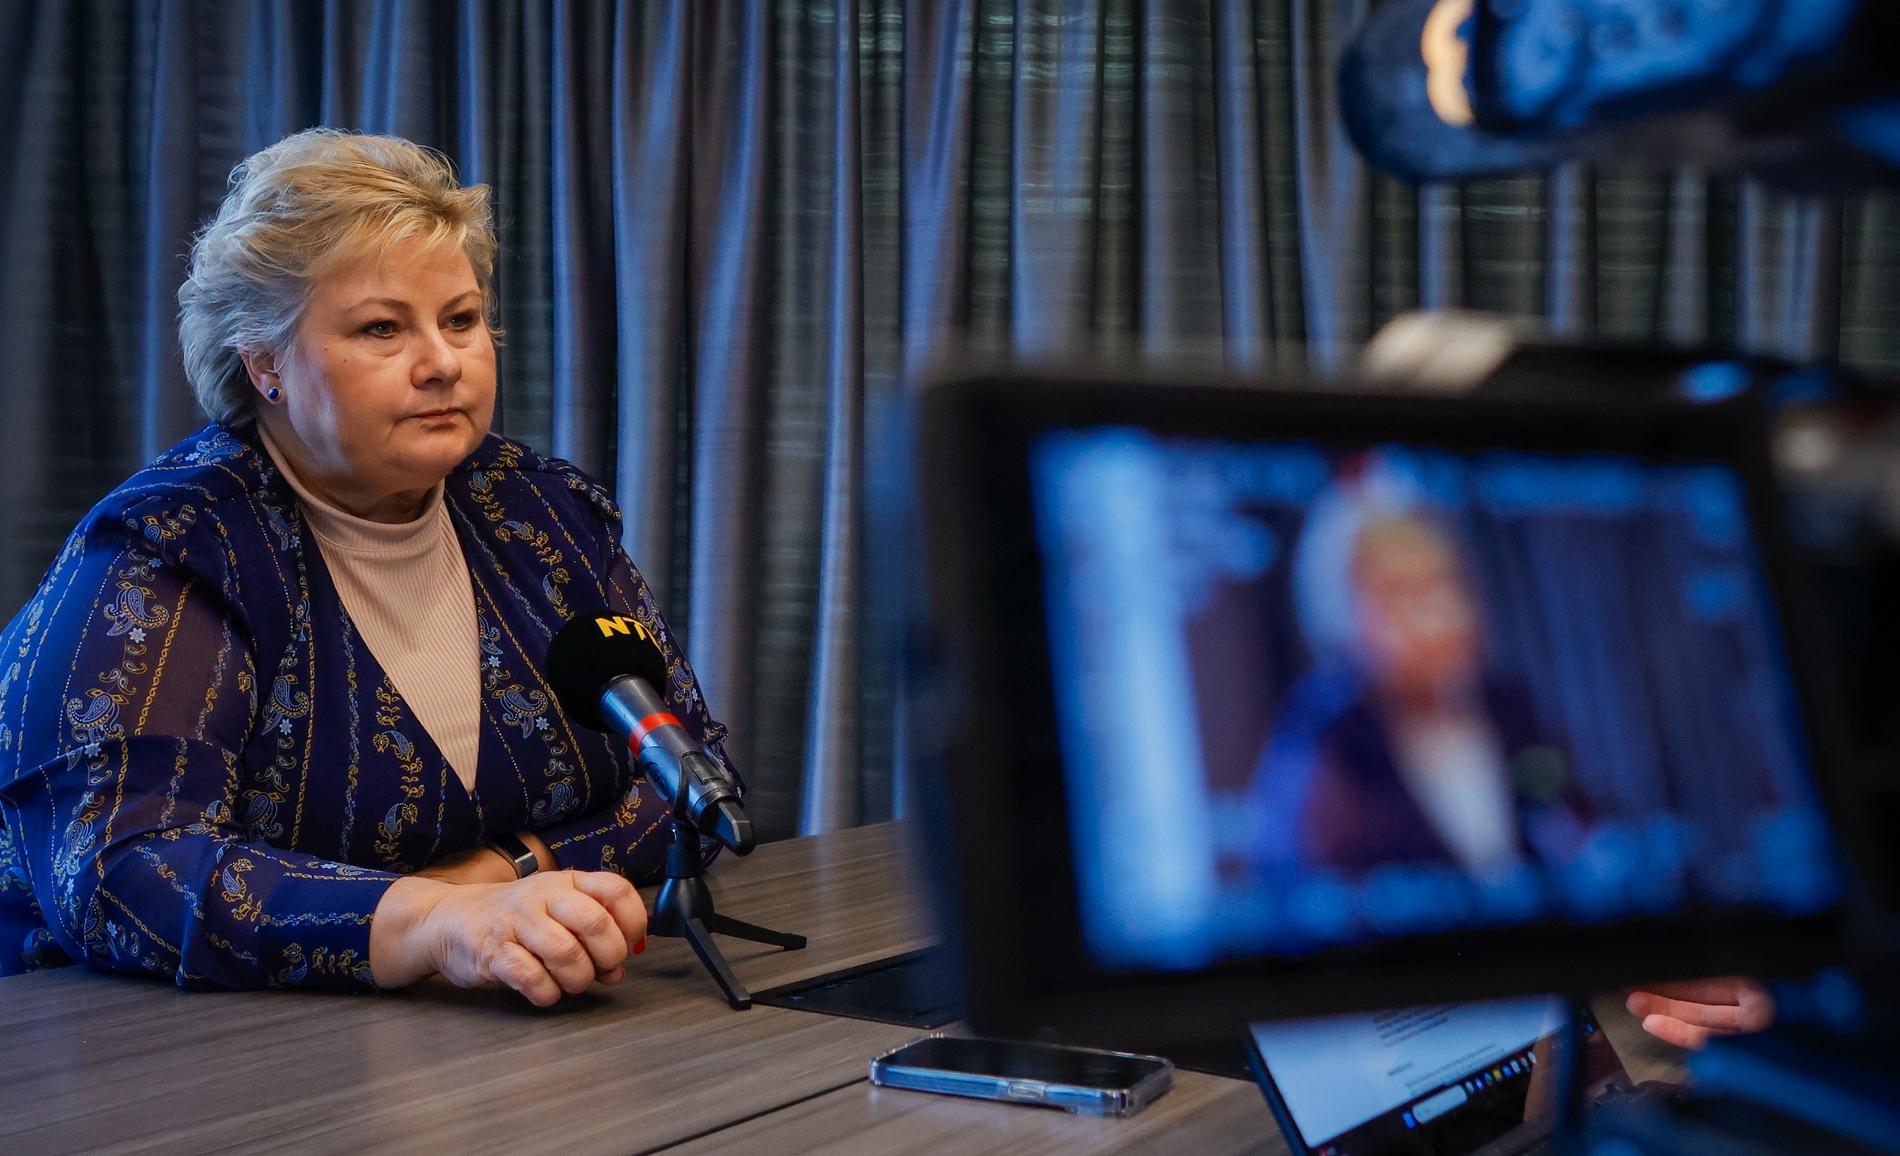 Erna Solberg intervjuas av norska NTB efter avslöjandena om maken Sindre Finnes aktiehandel.